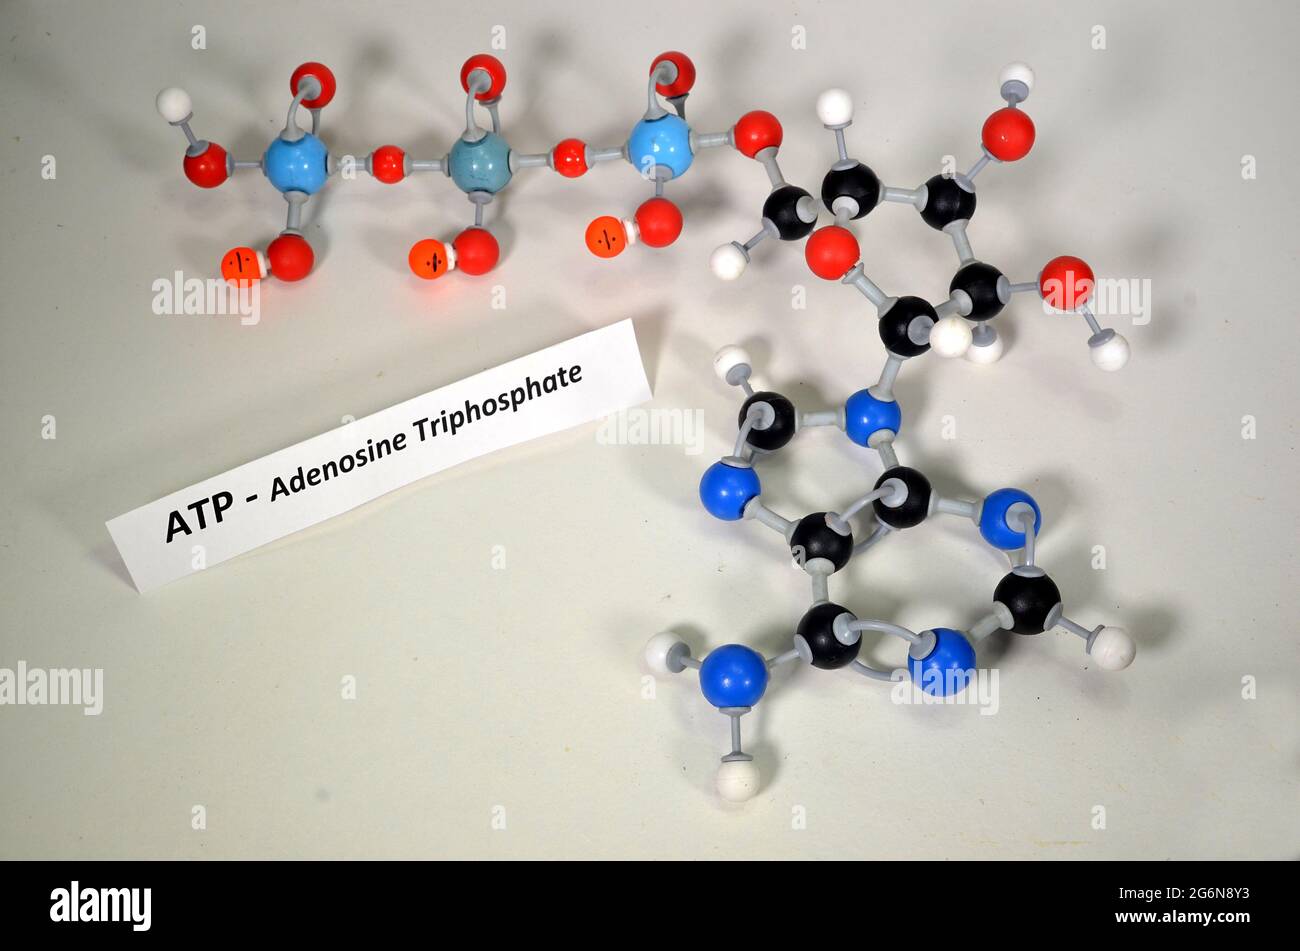 Modèle moléculaire de l'ATP, adénosine triphosphate. Le blanc est hydrogène, le noir est carbone, le rouge est oxygène, le bleu foncé est azote et le bleu clair phosphore. Ou Banque D'Images